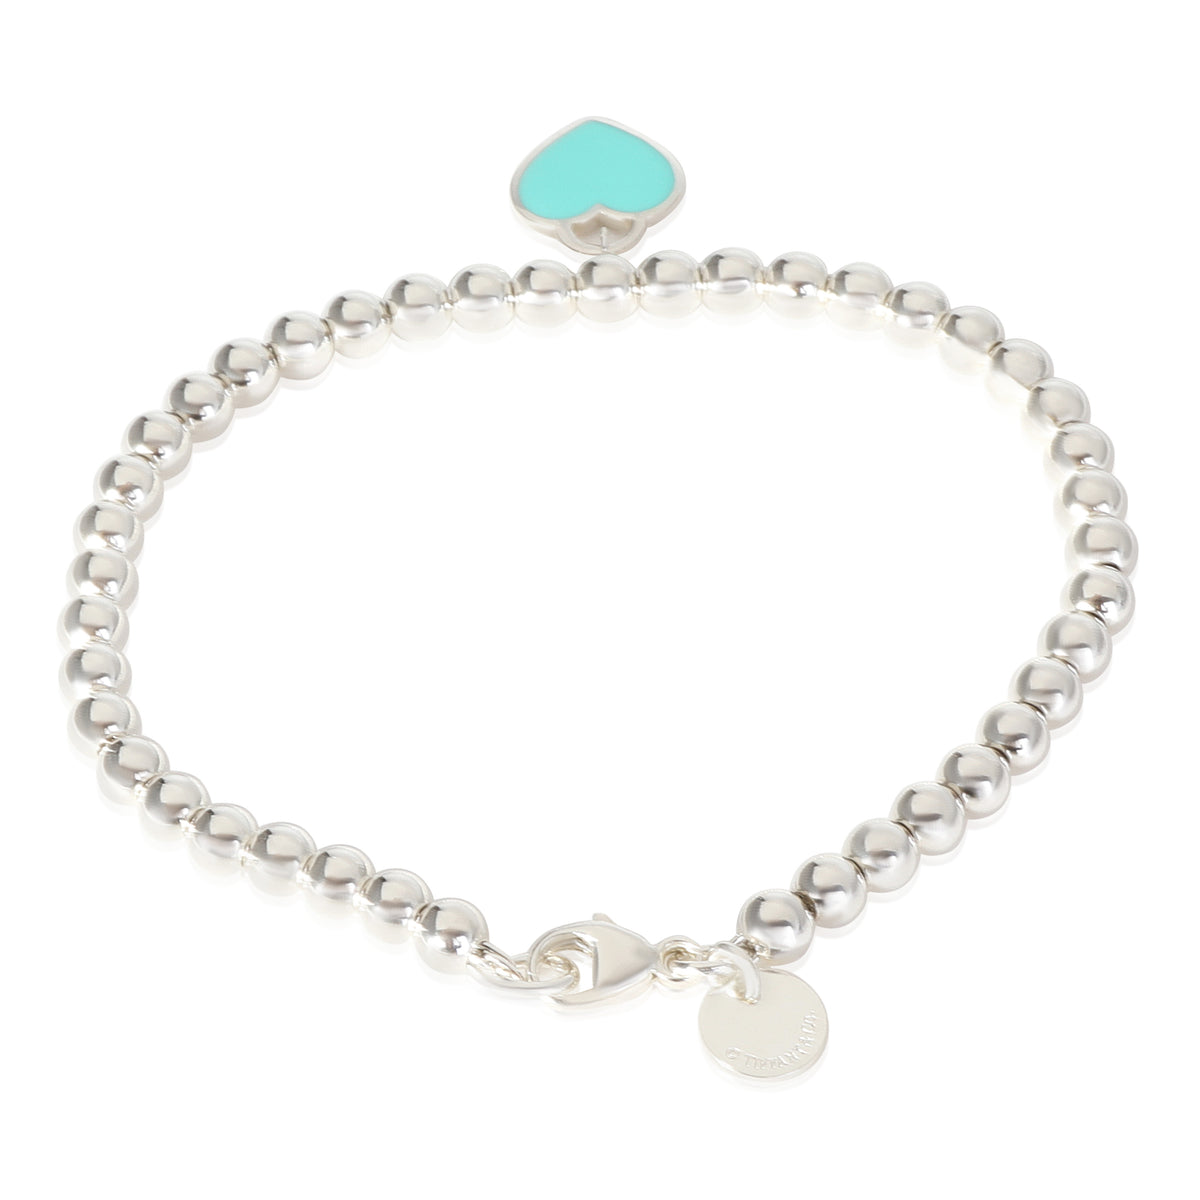 Return To Tiffany Bead Bracelet With Blue Enamel Heart in Sterling Silver